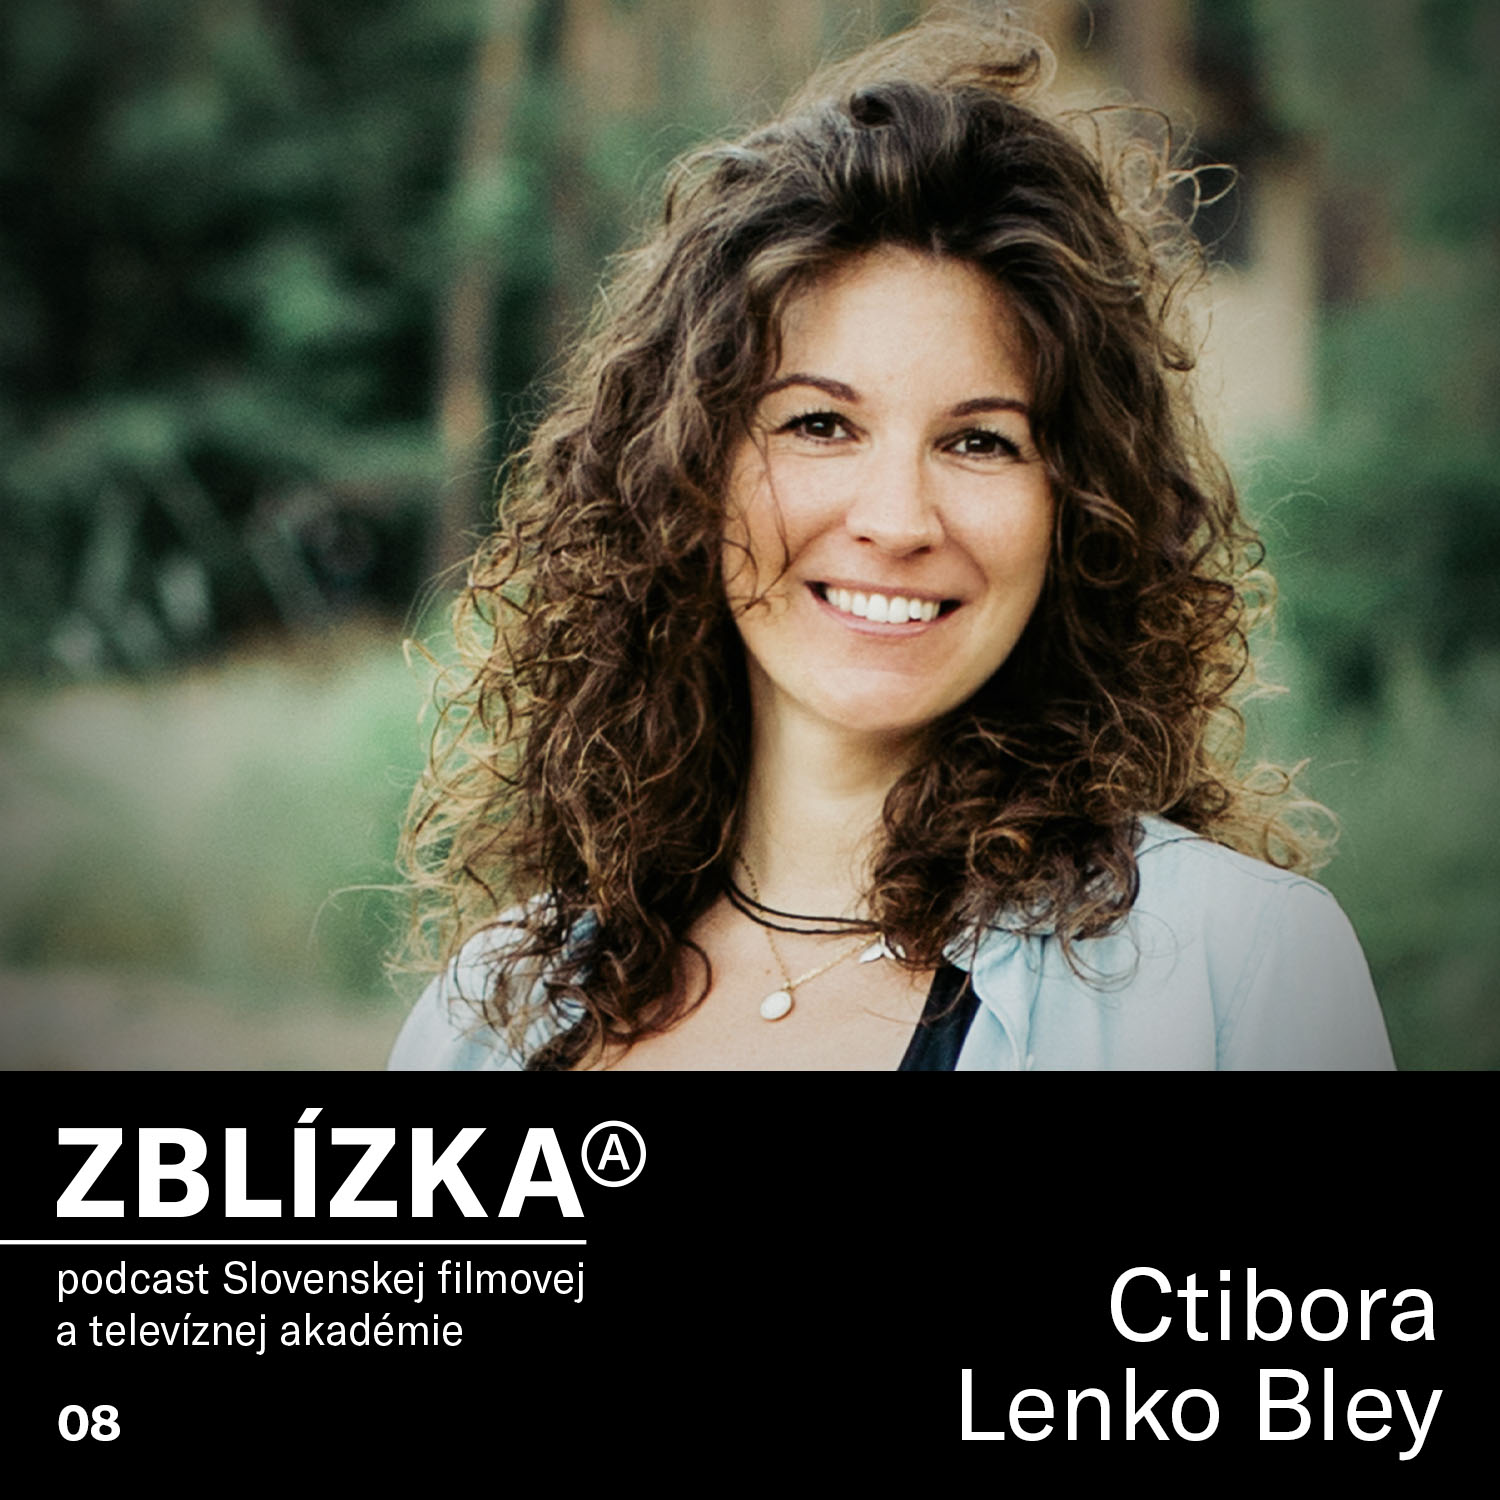 Ctibora Lenko Bley: Prvá zahraničná produkcia bola pre mňa krst ohňom